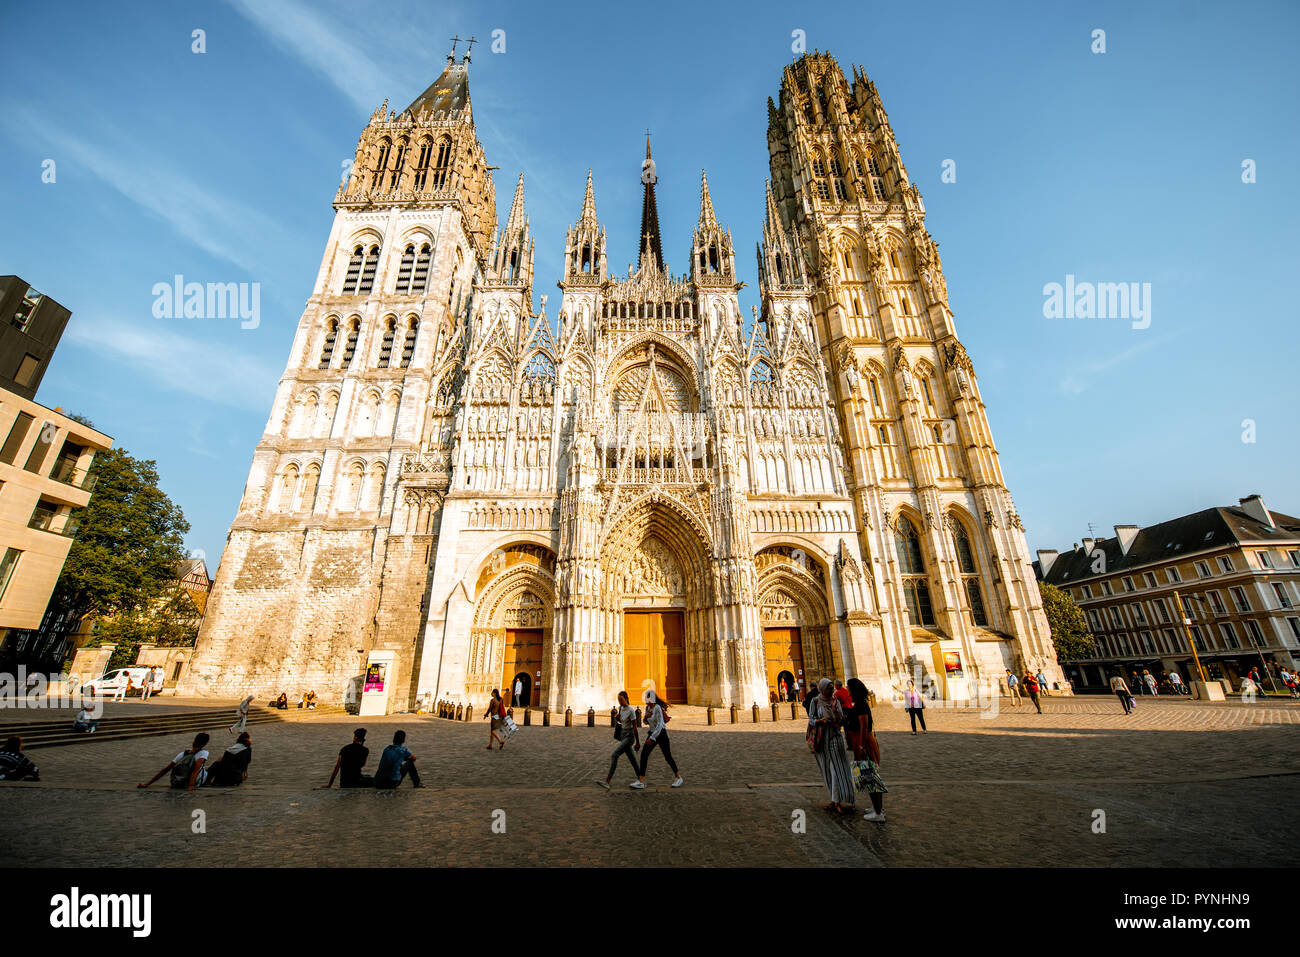 En Rouen, Francia - Septiembre 03, 2017: Vista desde abajo en la fachada de la famosa catedral gótica de Rouen, en la ciudad de Rouen, la capital de la región de Normandía en Francia Foto de stock